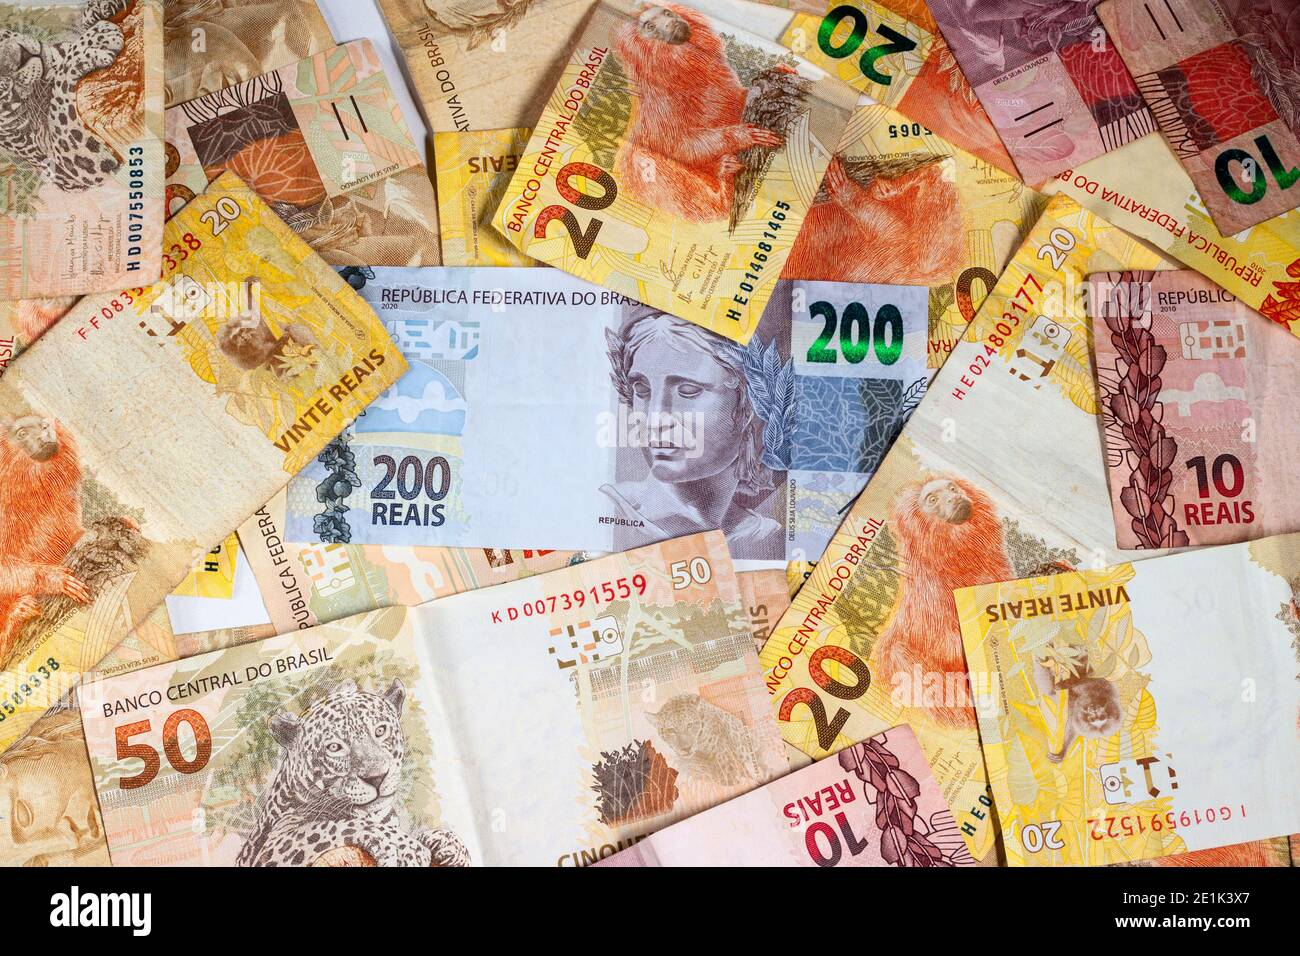 Facture monétaire brésilienne. Deux cents projets de loi, dix, vingt et cinquante projets de loi réels. Vue de dessus. Banque D'Images